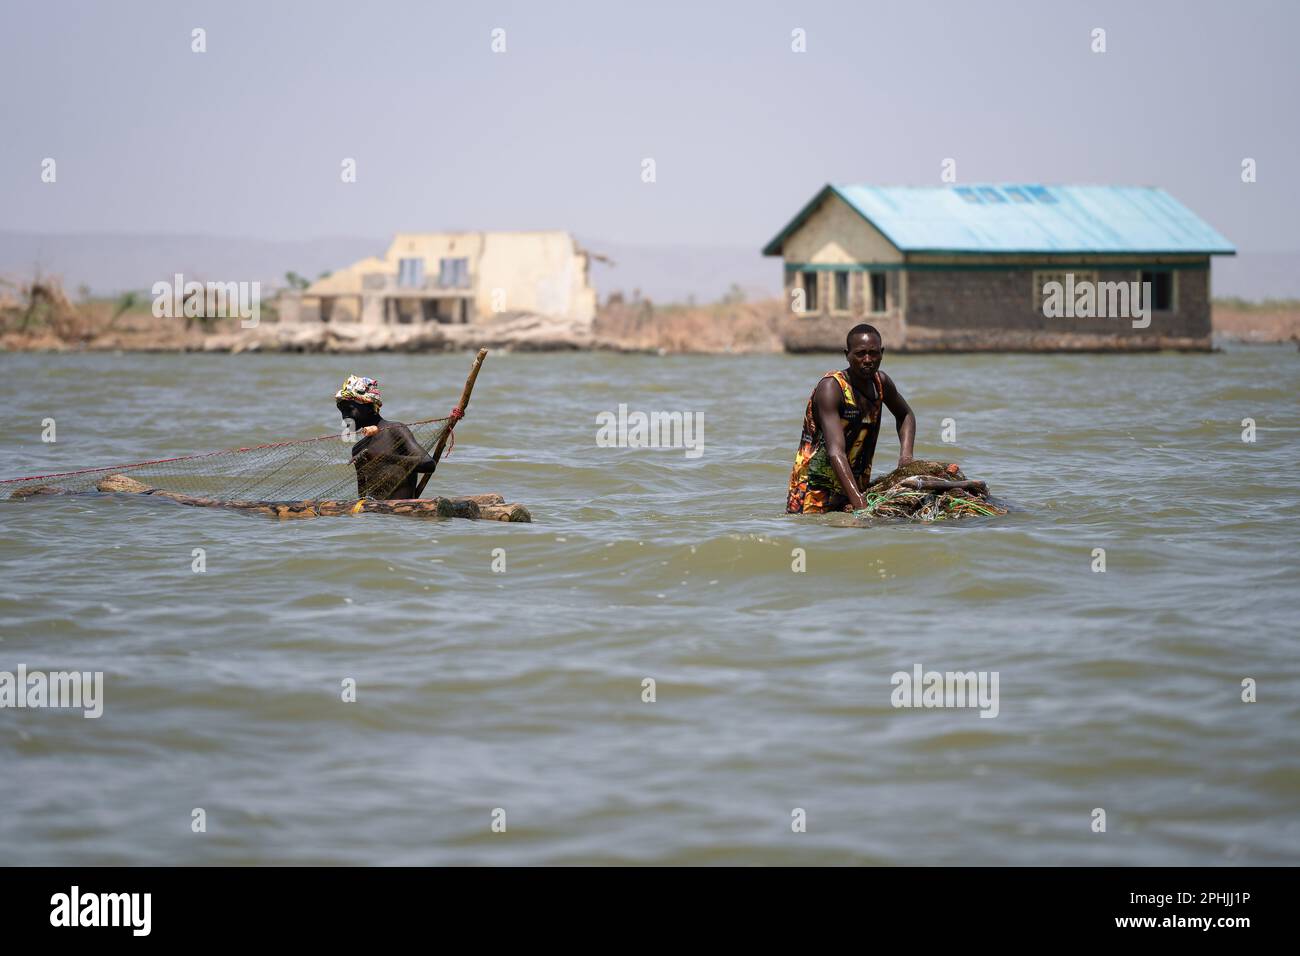 Kalokol, Kenia. 14. Februar 2023. Zwei Fischer, die mit ihren Netzen im Turkana-See spazieren. Das Dorf Kalokol ist in den letzten Jahren überflutet worden, weil der Turkana-See und alle anderen Seen des Rift Valley aufgrund des Klimawandels enorm angestiegen sind. Dieses Phänomen hat ganze Dörfer überschwemmt, die Bevölkerung gezwungen, ihre Häuser und Geschäfte aufzugeben, und hat verheerende Auswirkungen auf die natürlichen Ökosysteme. (Foto: Simone Boccaccio/SOPA Images/Sipa USA) Guthaben: SIPA USA/Alamy Live News Stockfoto